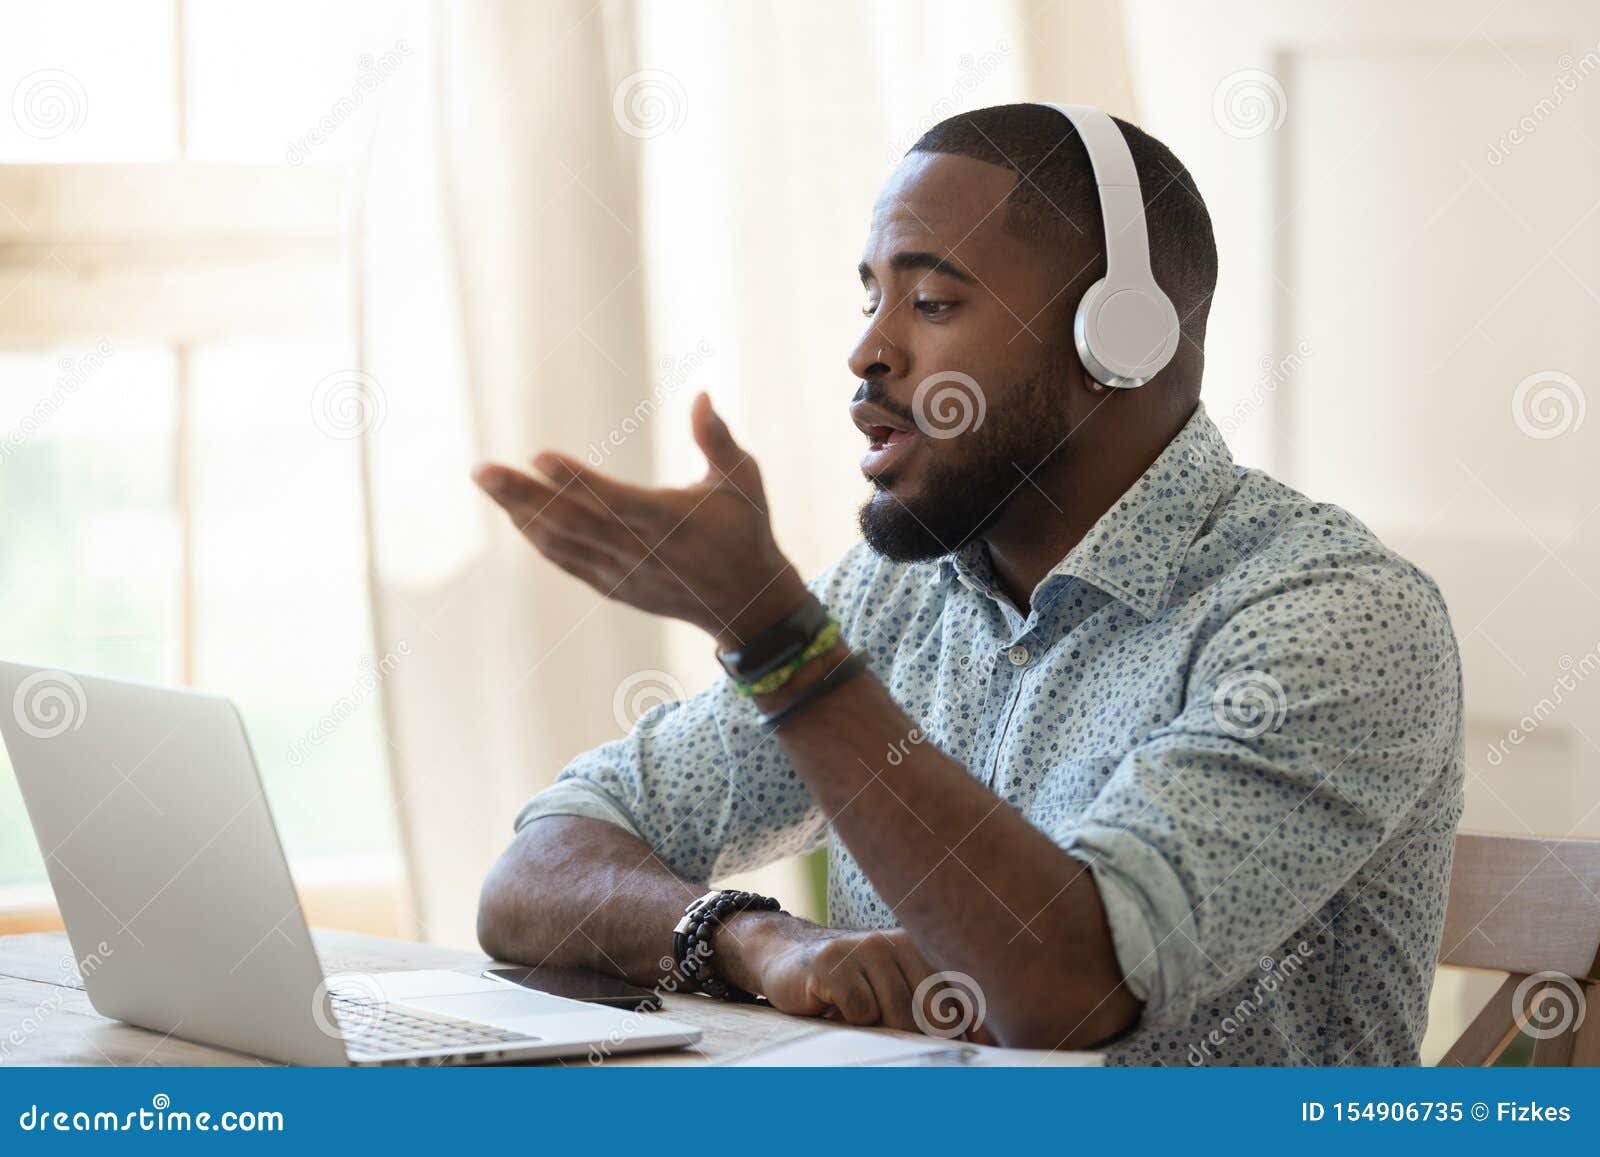 african male skype teacher wearing headphones talking looking at laptop